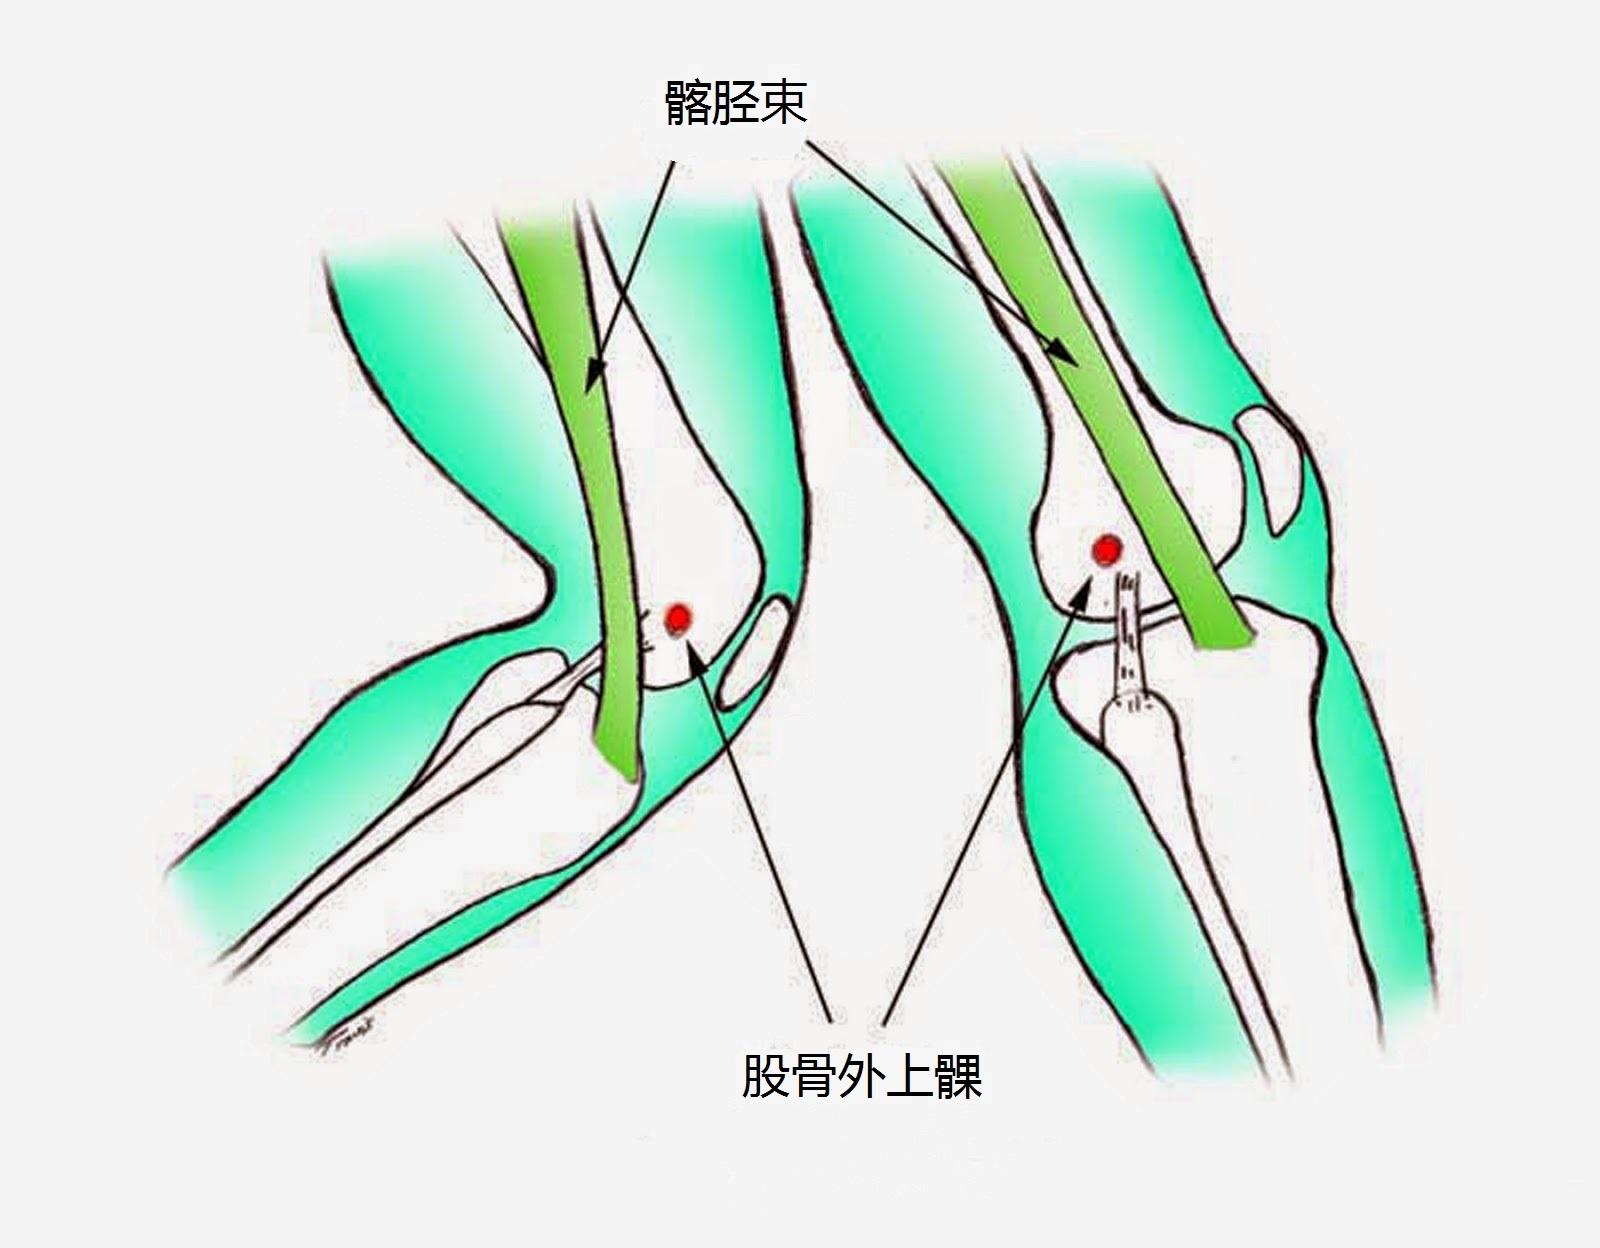 图1-128 踝和足的韧带(内侧面)-基础医学-医学